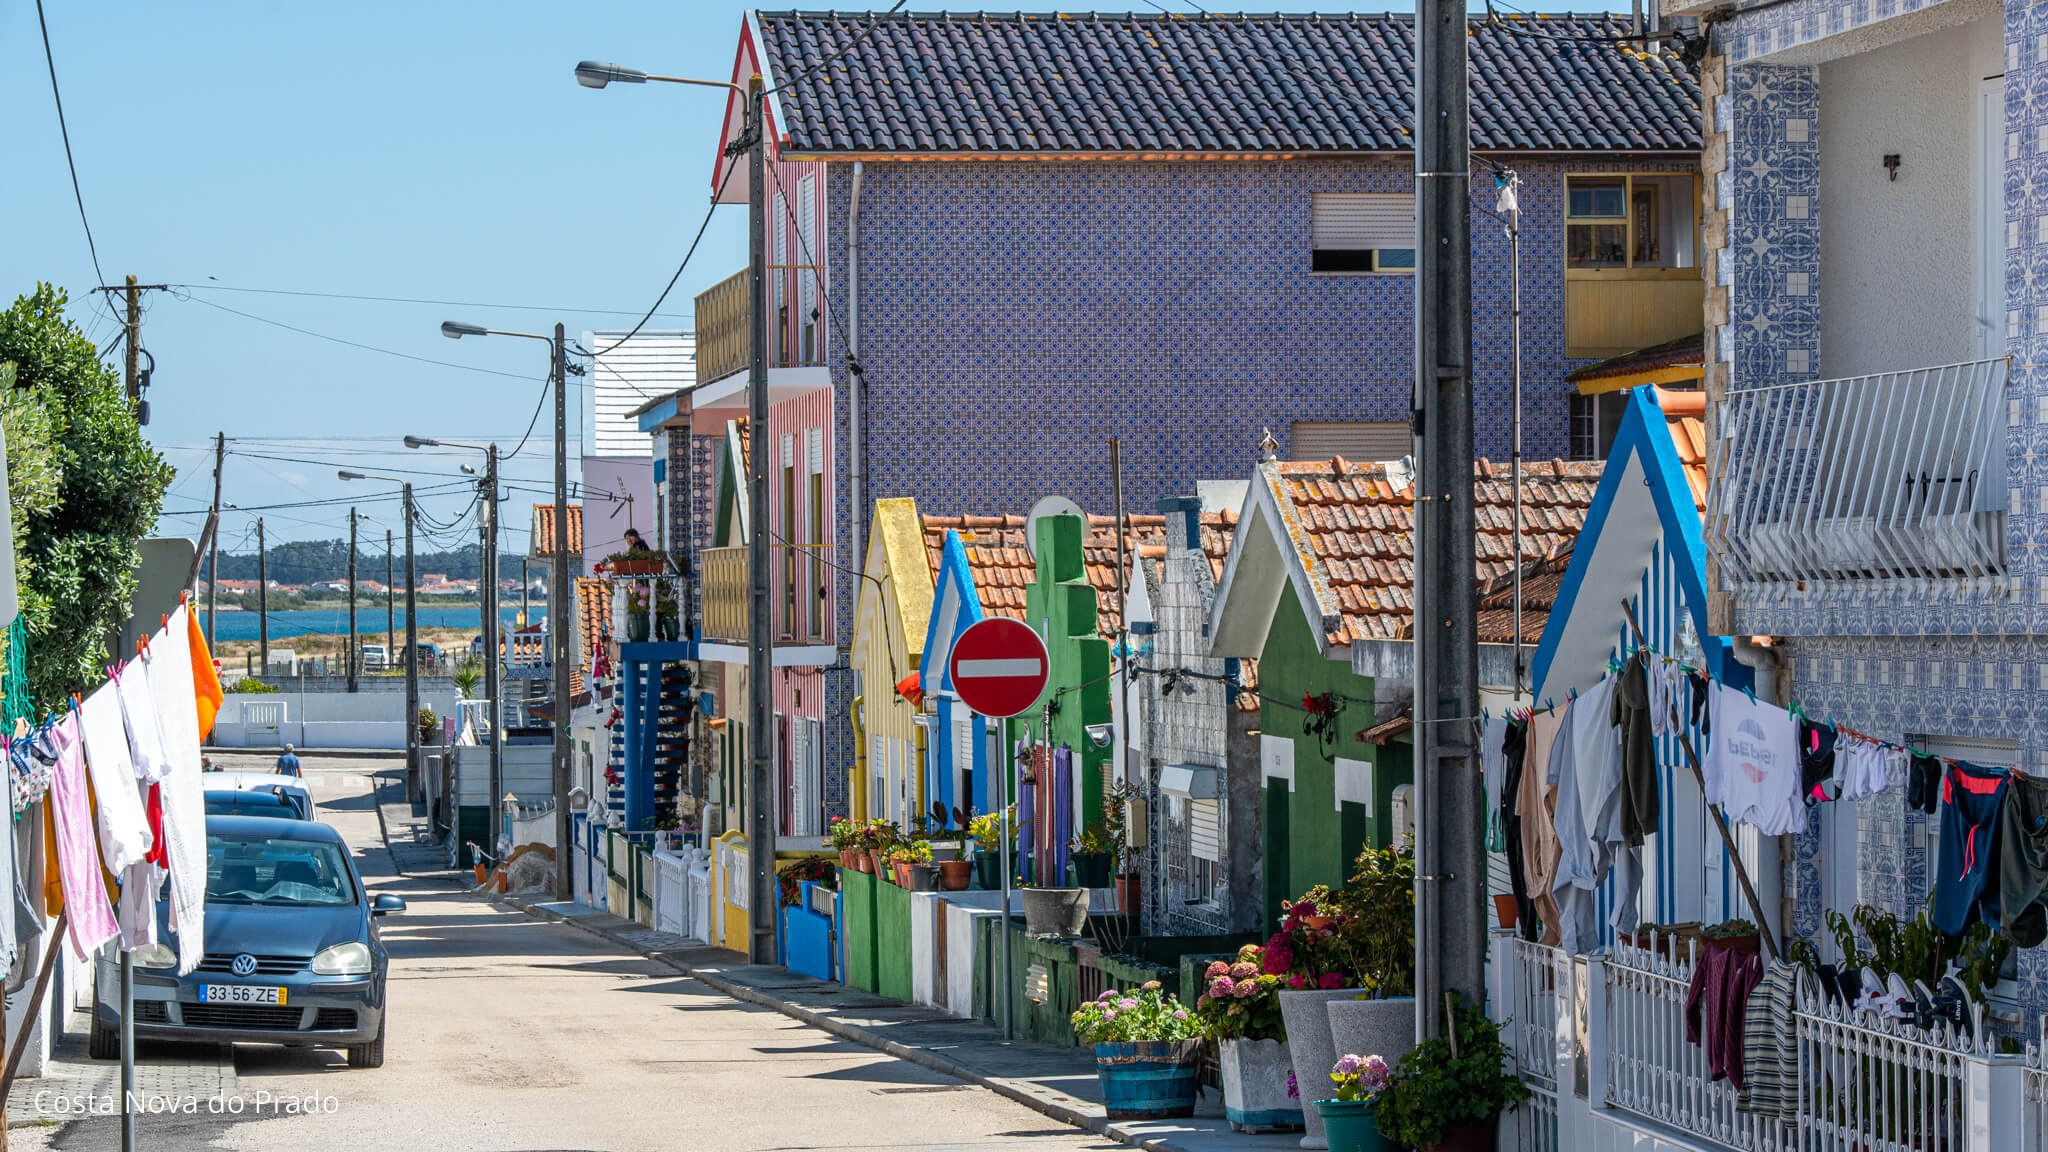 NIESMANN+BISCHOFF - Stranddeko und Marilyn Roadtrip Frankreich-Spanien-Portugal